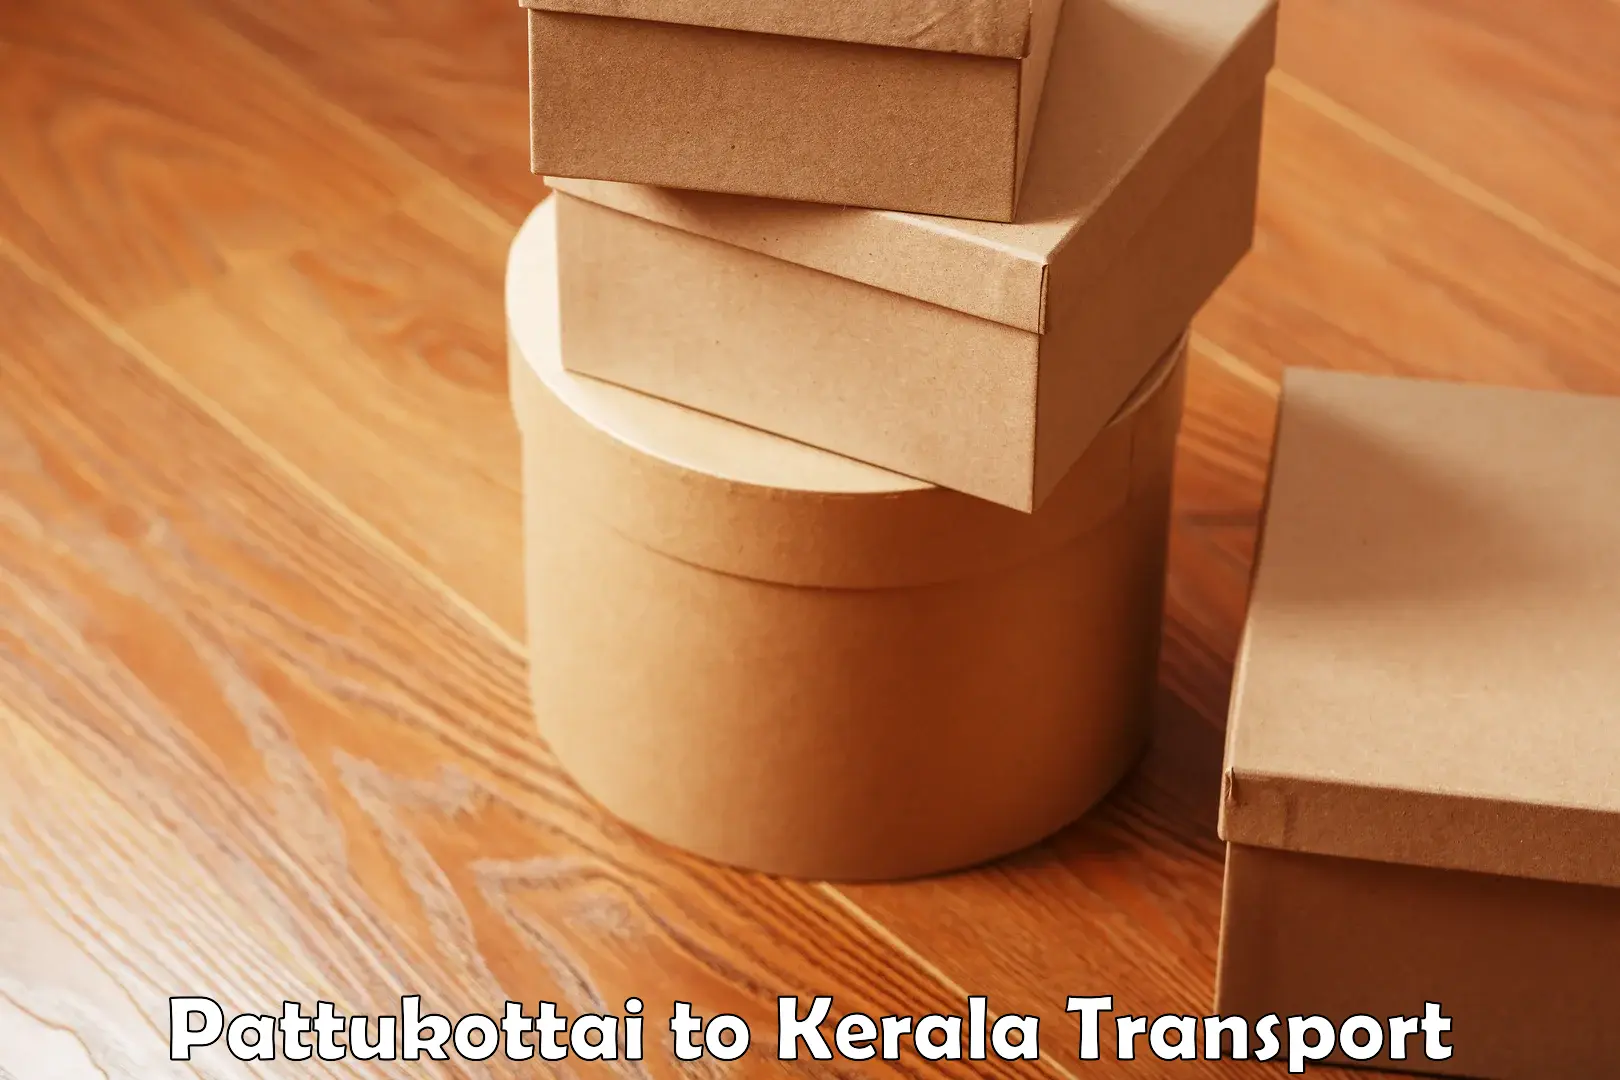 Transport shared services Pattukottai to Thrissur